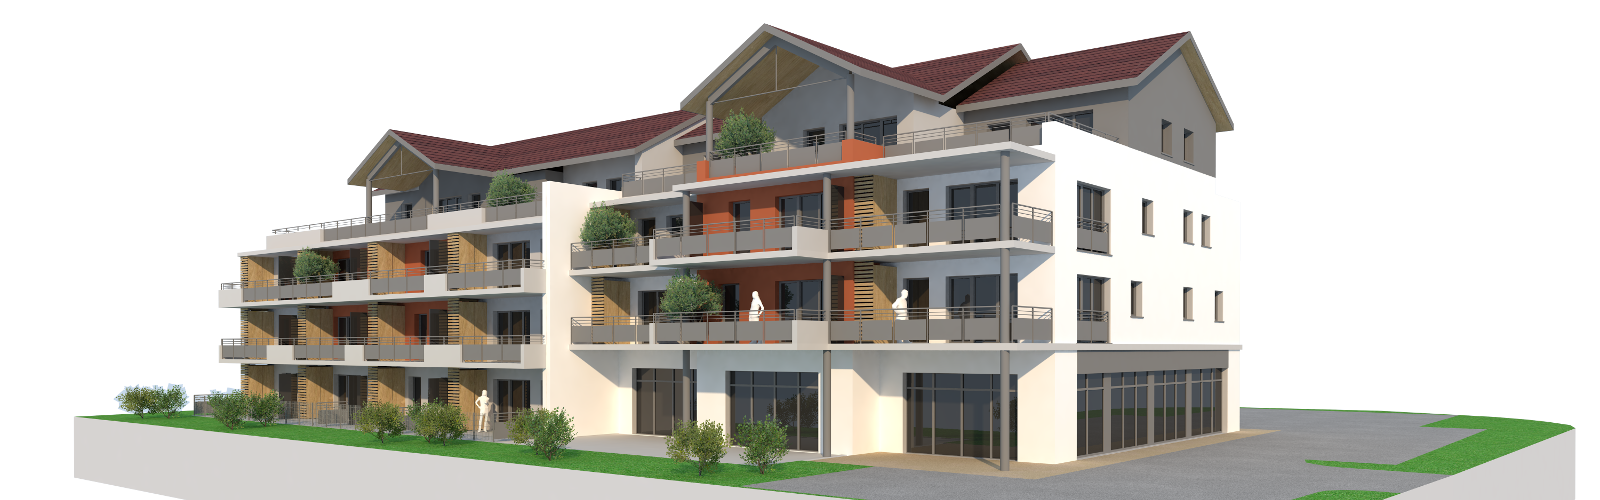 Le Mercantour à Valdahon, 21 appartements neufs livrés fin 2021